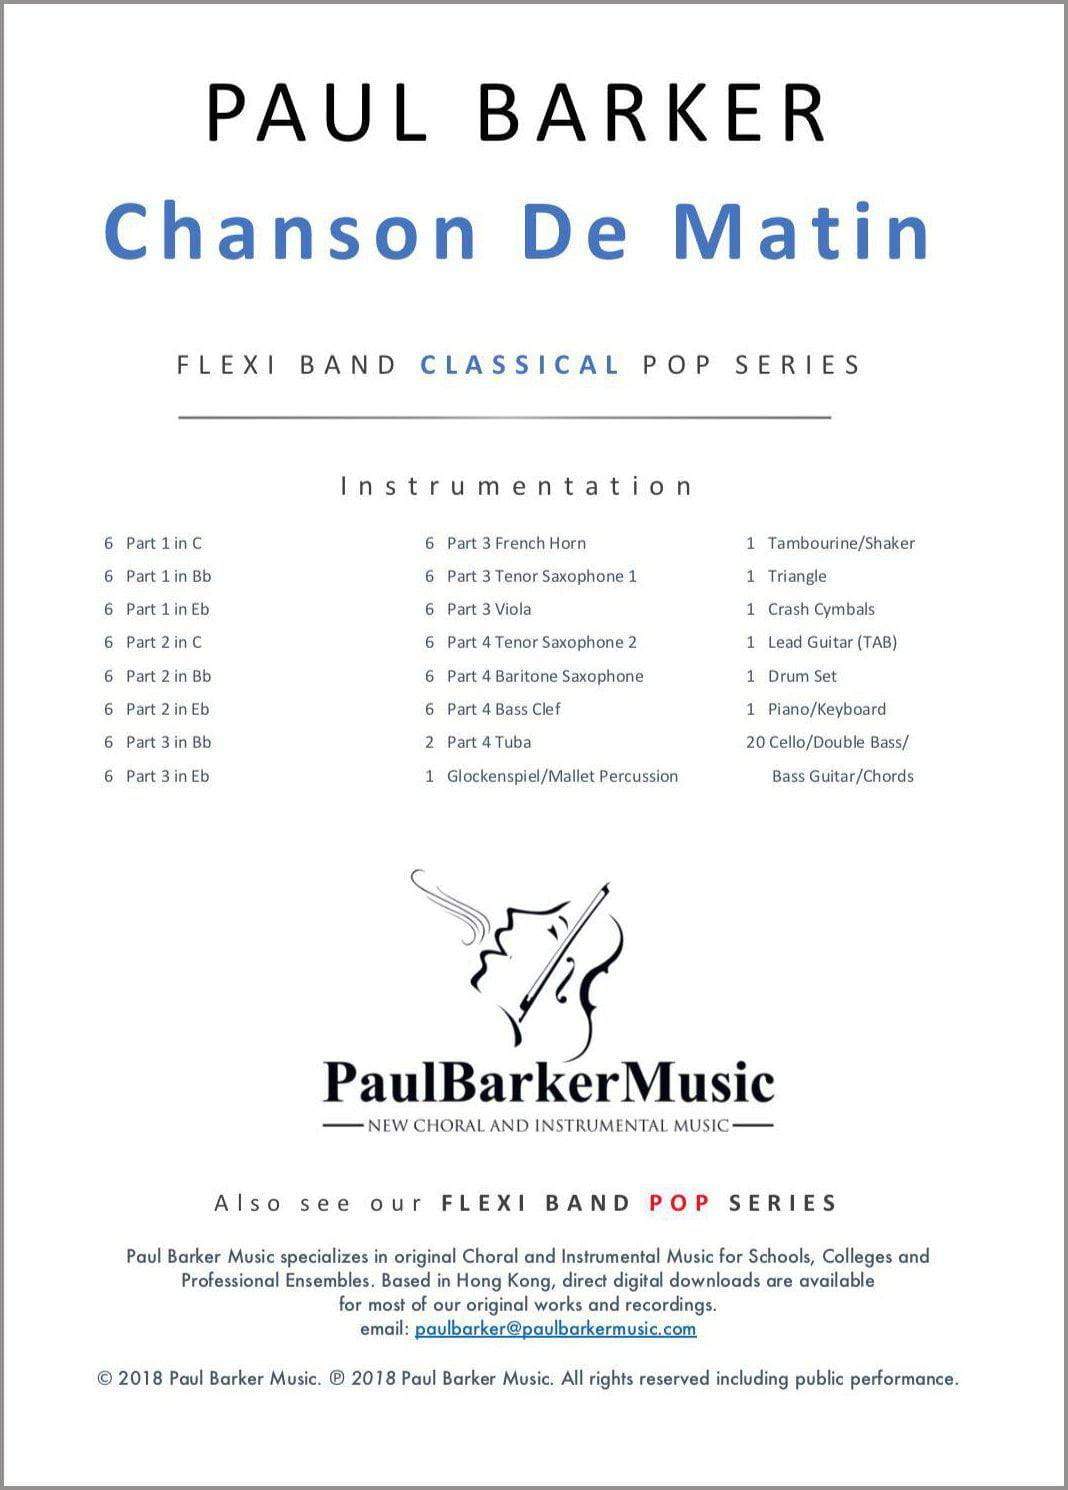 Chanson De Matin - Paul Barker Music 